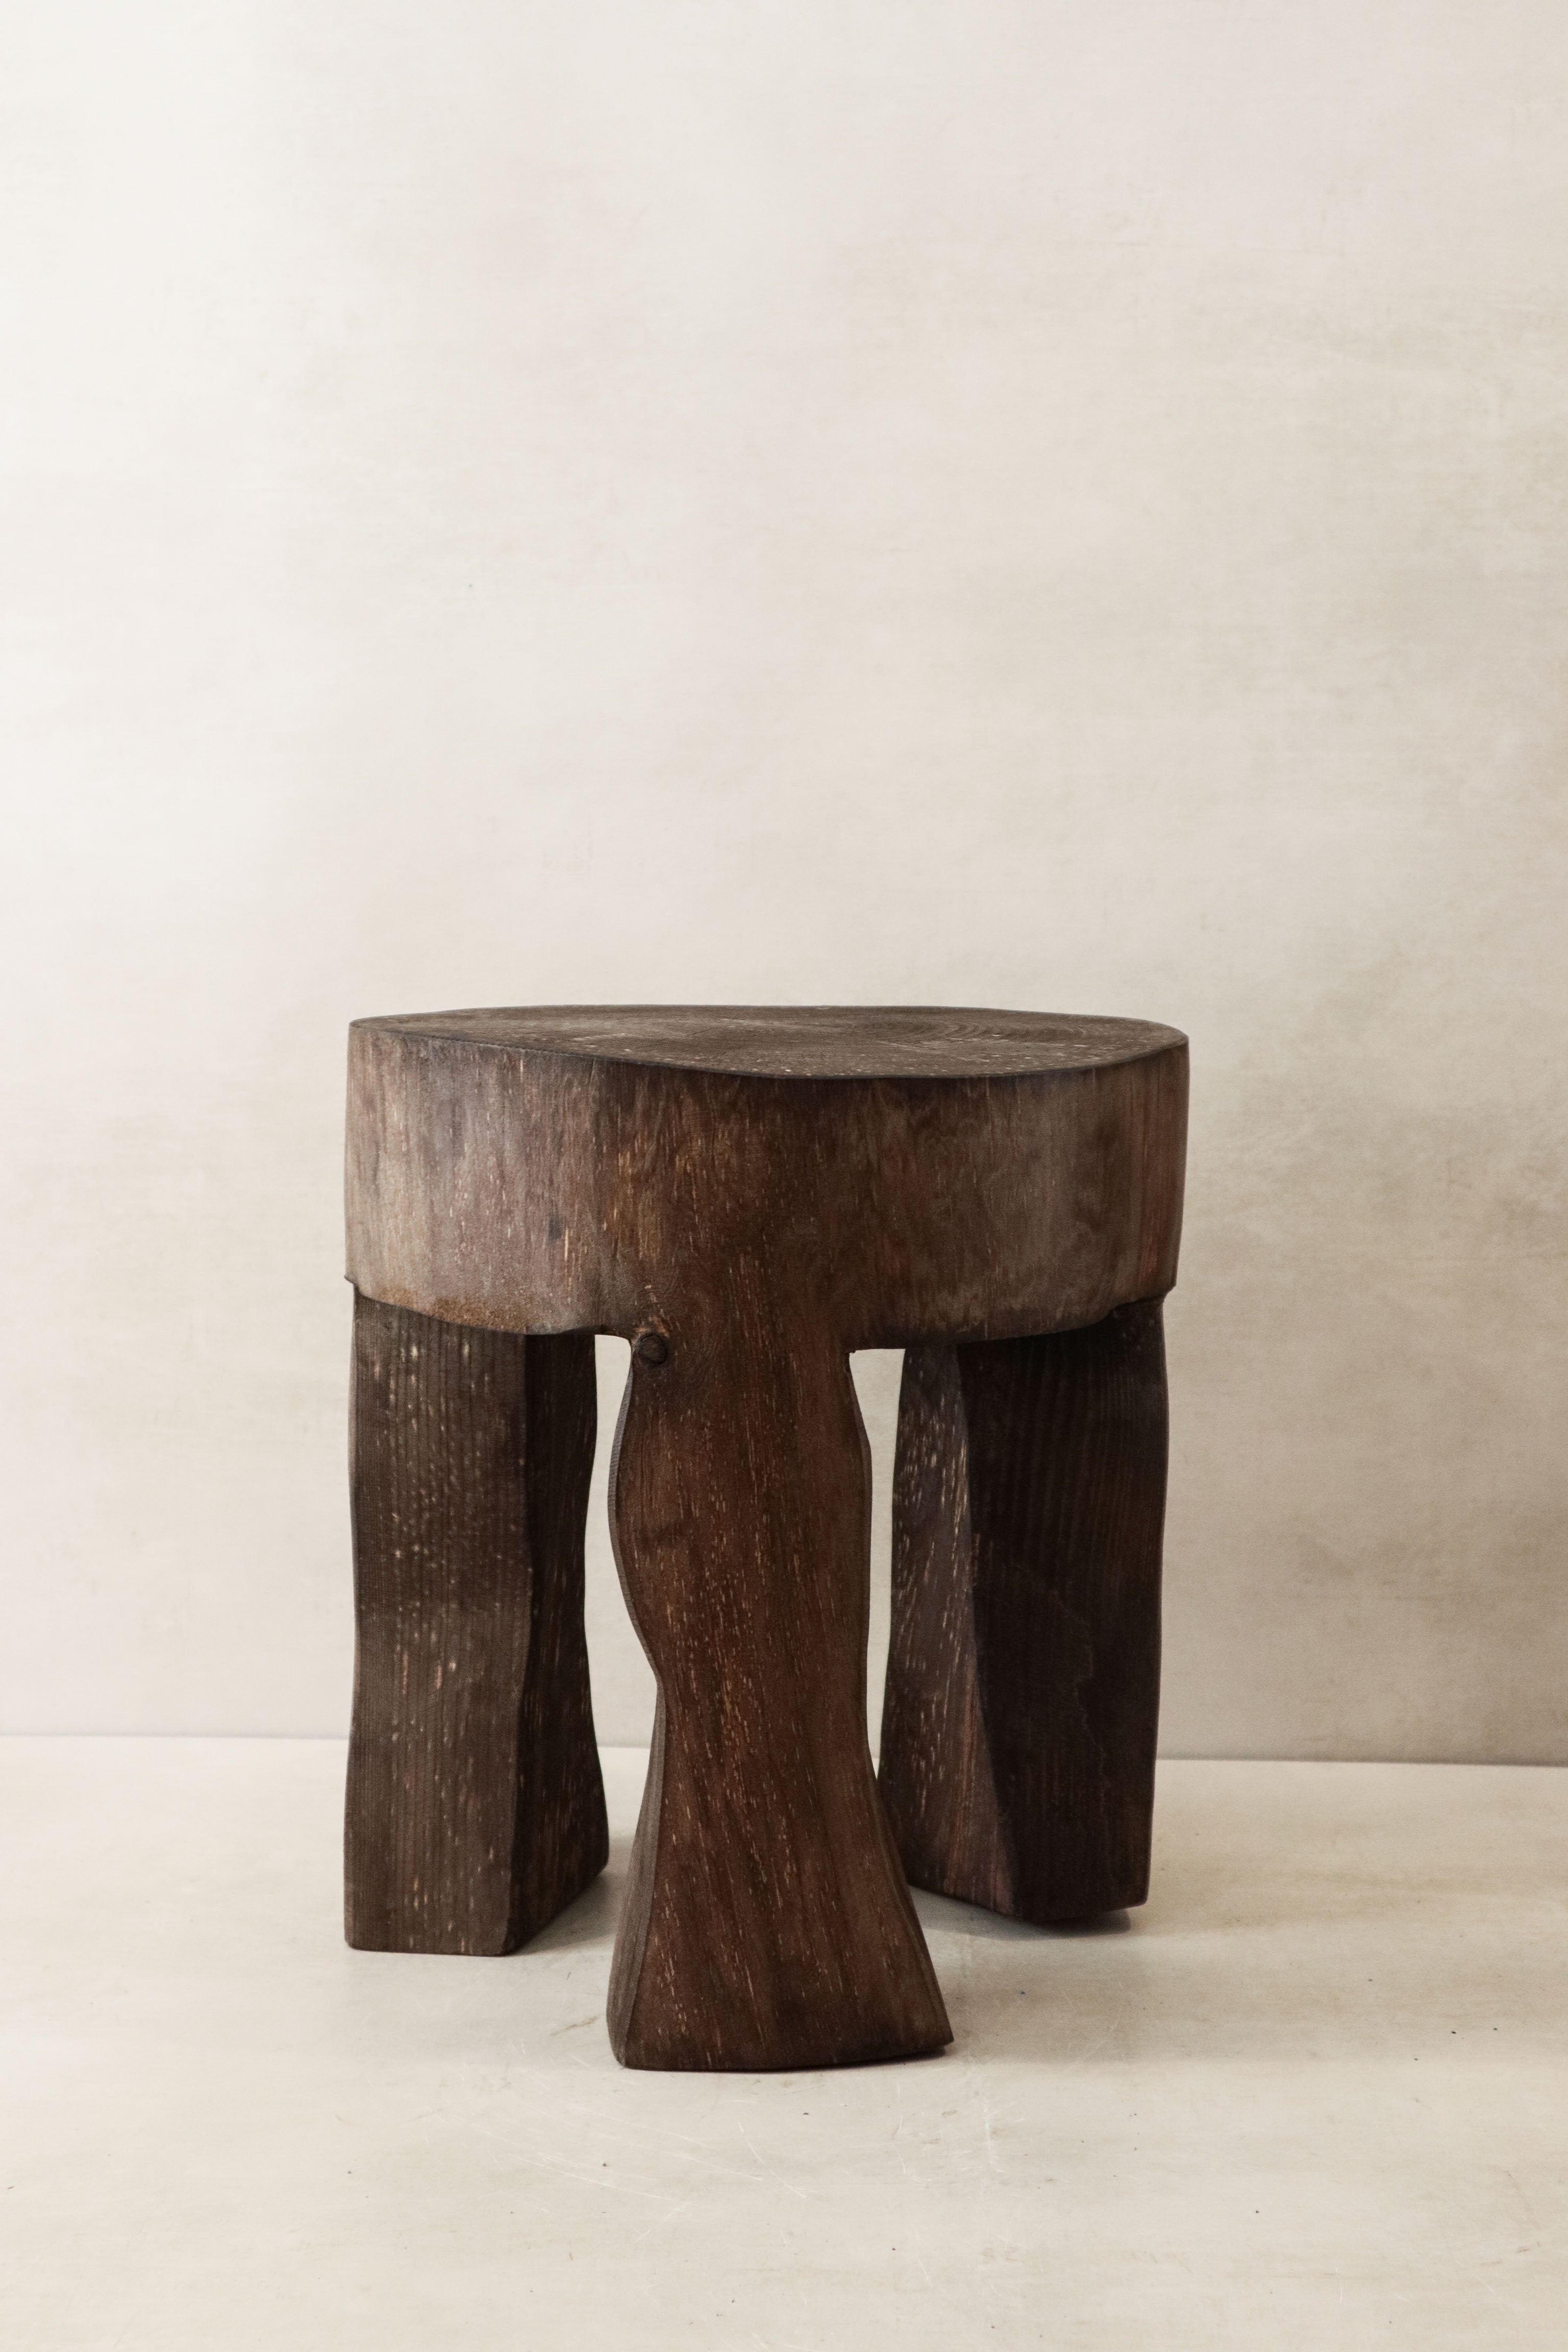 botanicalboysuk Hand Carved Wooden Stool\Side Table - 47.3